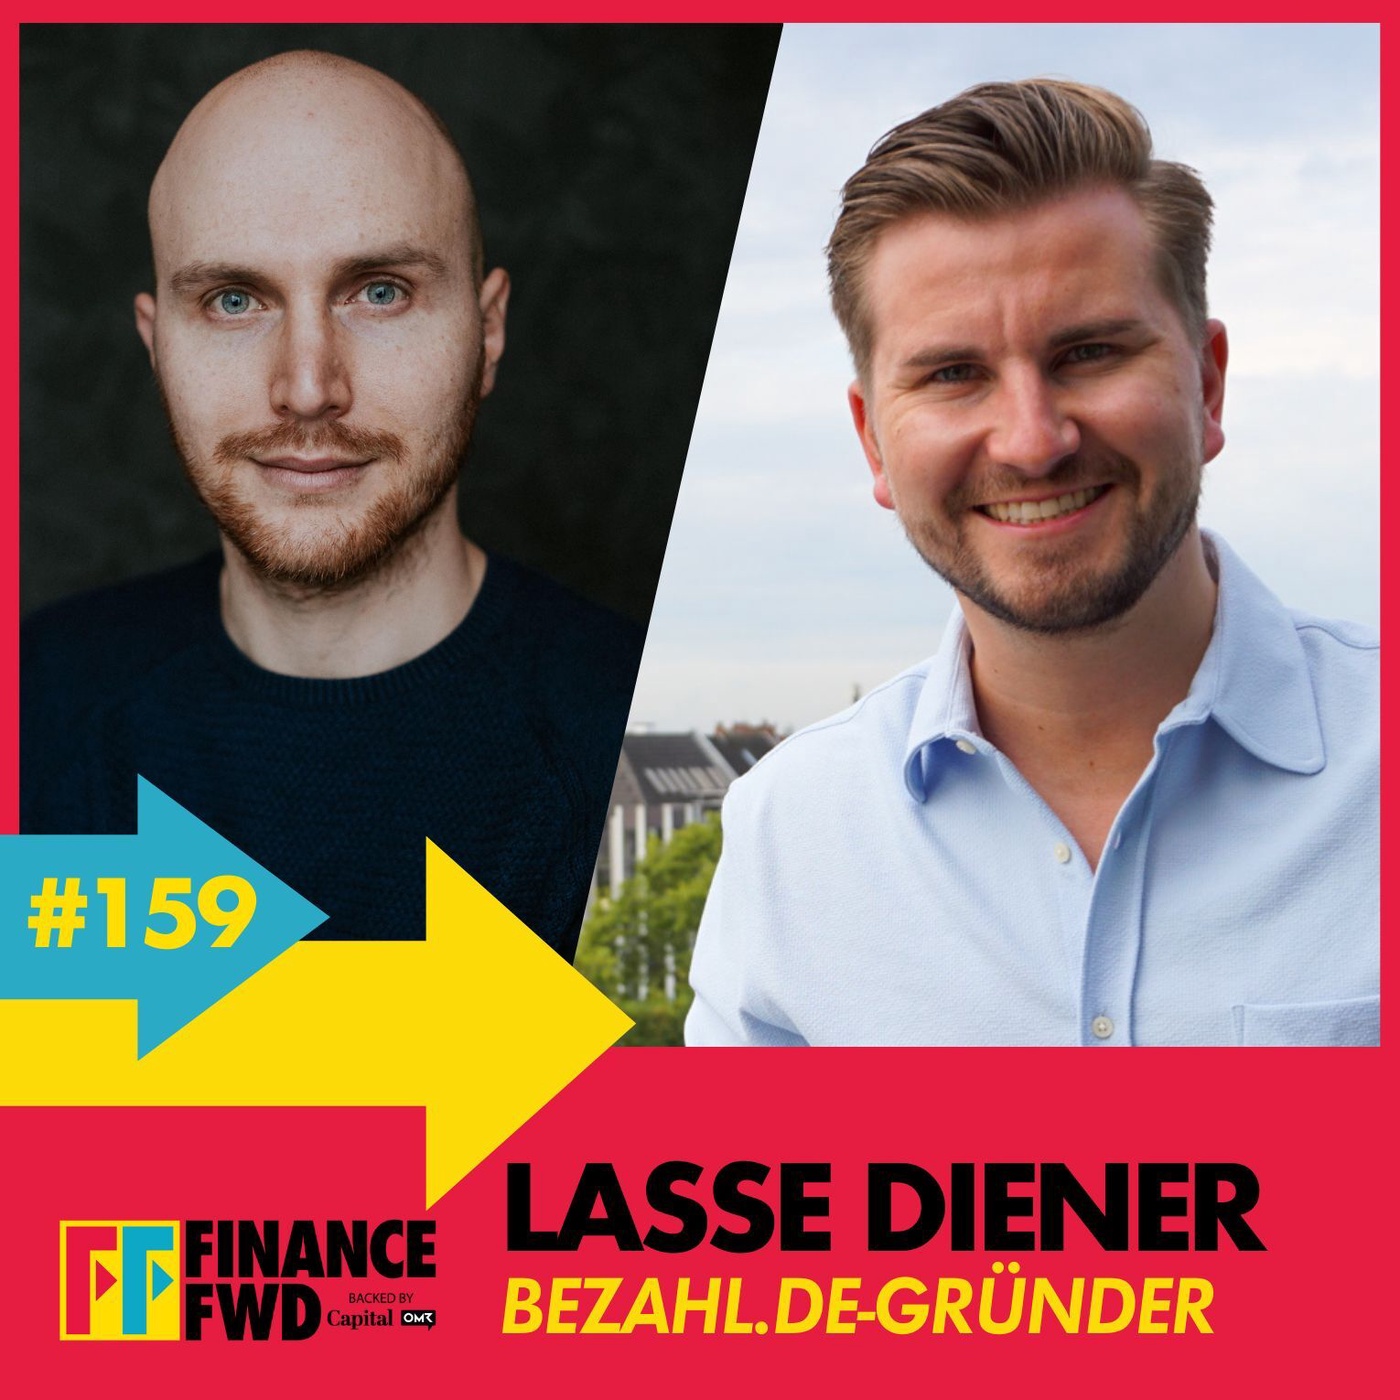 FinanceFWD #159 mit Bezahl.de-Gründer Lasse Diener